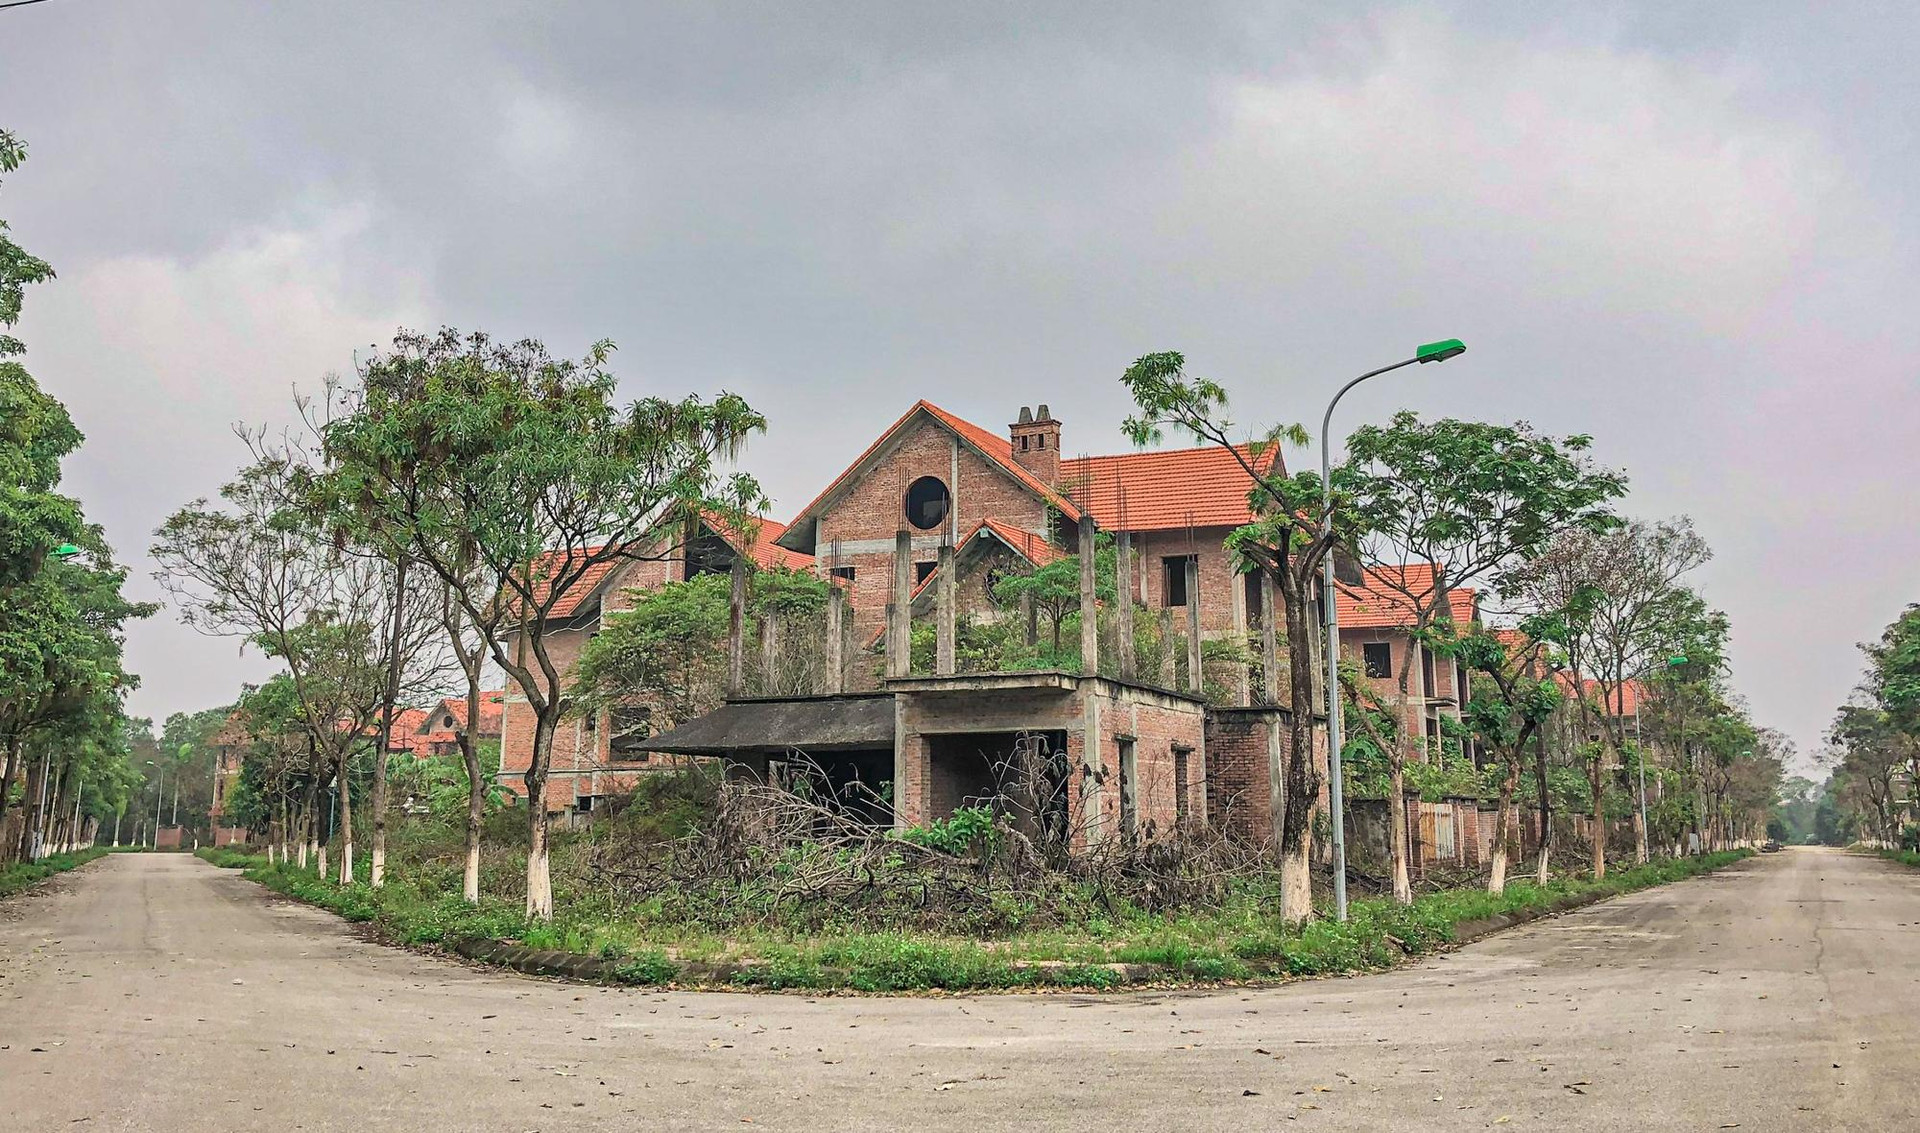 [Photo Essay] Sắp lên thành phố phía Bắc Hà Nội, làng biệt thự Mê Linh - nơi chôn vùi hàng nghìn tỷ đồng của nhà đầu tư hiện nay ra sao? - Ảnh 3.